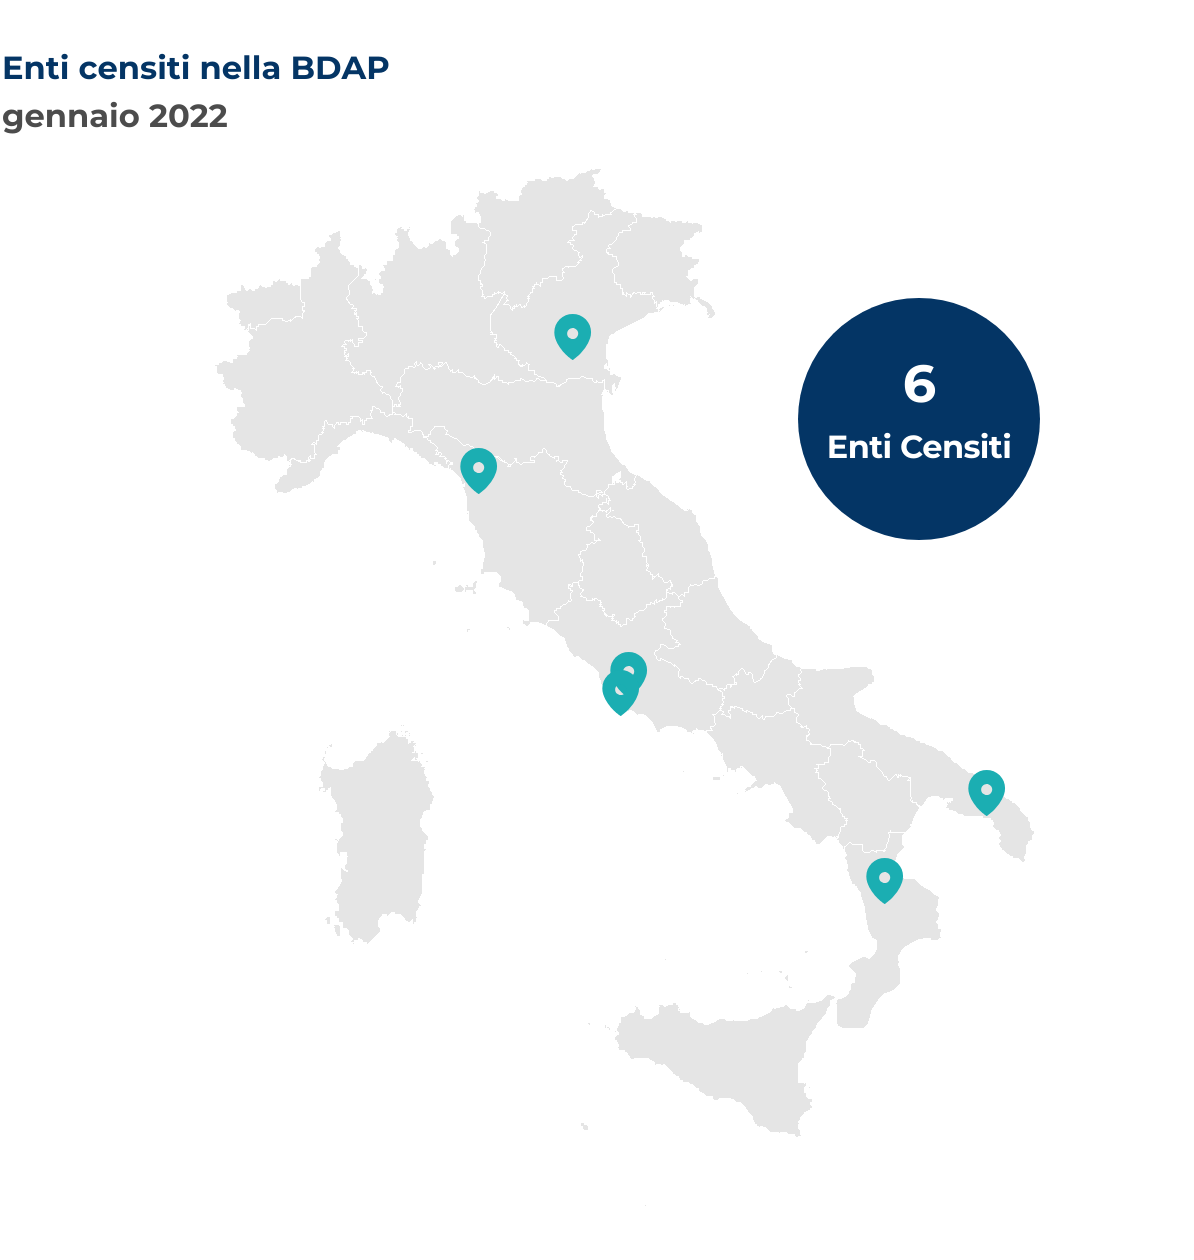 Mappa dell'Italia che mostra la localizzazione degli enti censiti nella BDAP. Nel mese di gennaio 2022 sono stati censiti 6 nuovi enti così distribuiti per regione: Calabria 1 ente; Lazio 2 enti; Puglia 1 ente; Toscana 1 ente; Veneto 1 ente